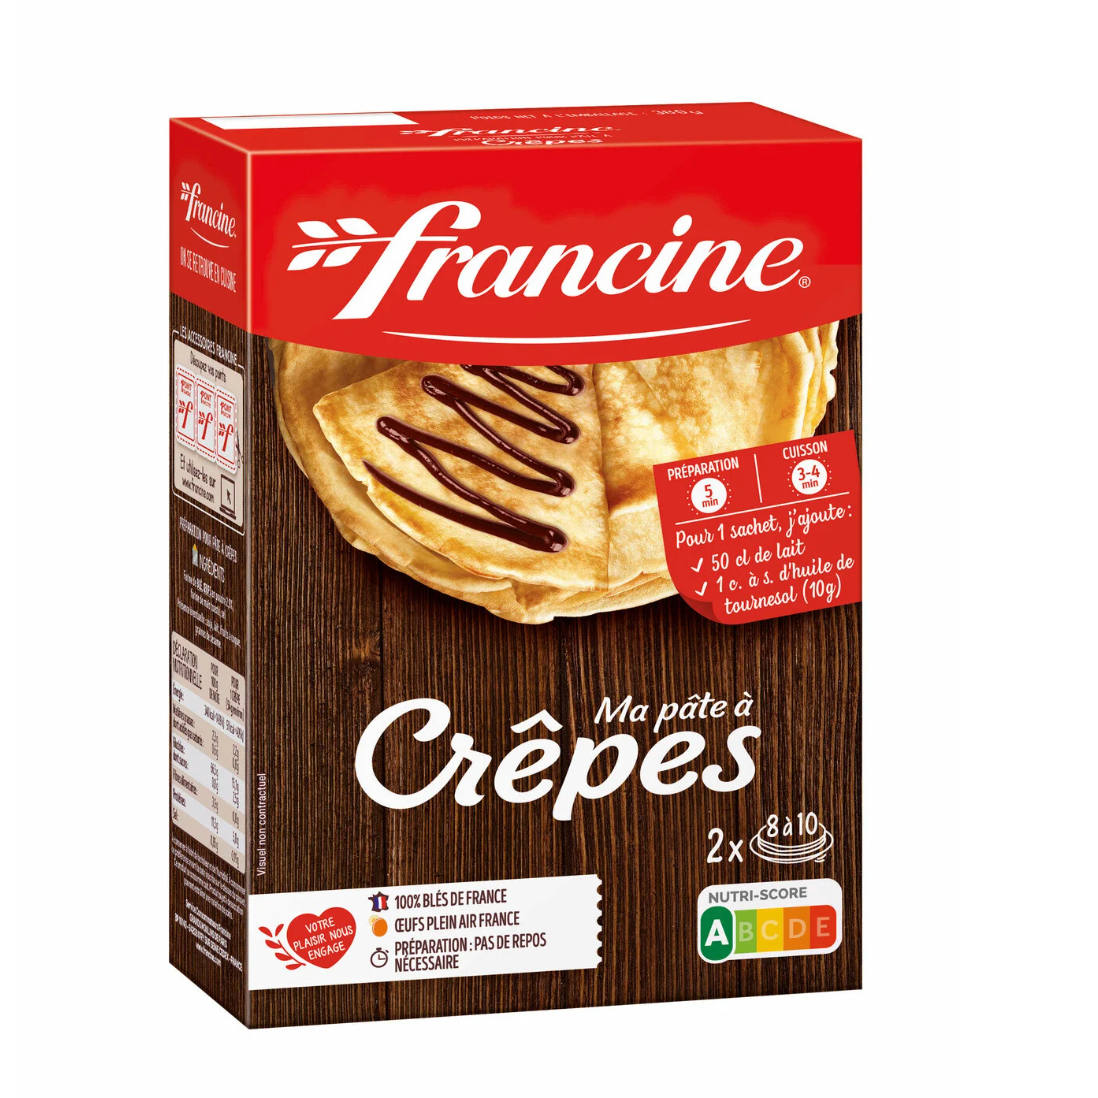 Francine Crepes Baking Mix